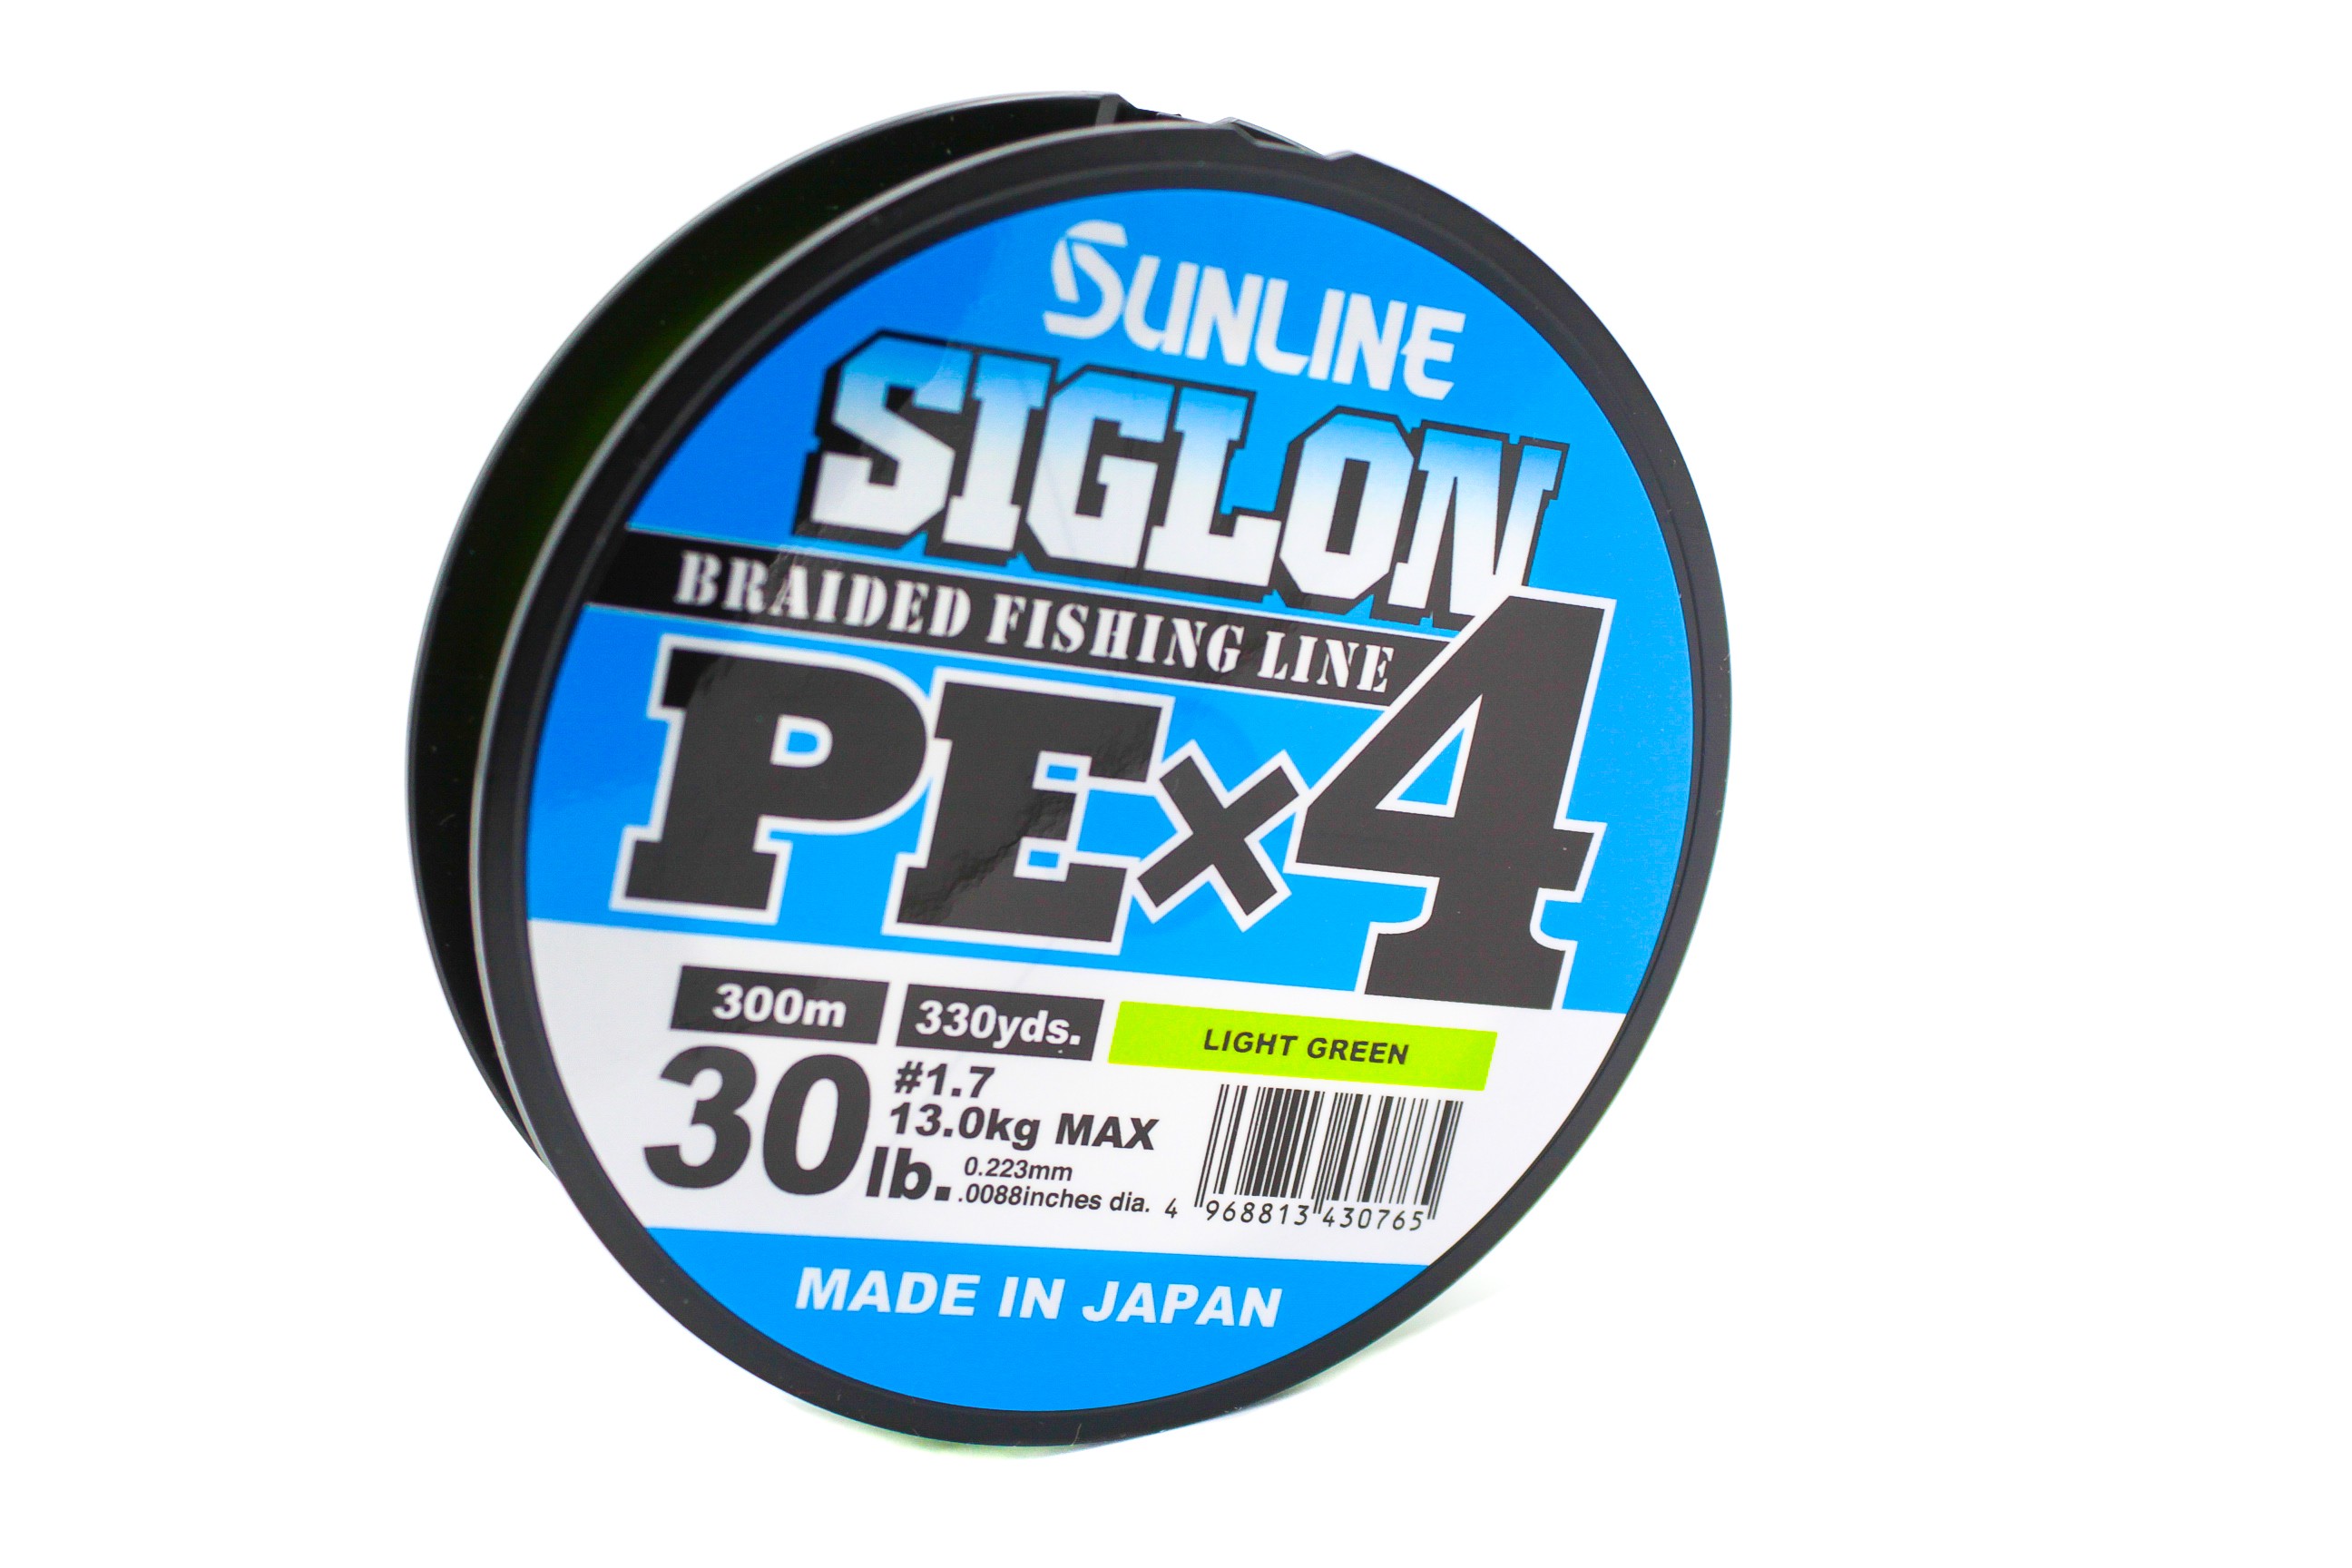 Шнур Sunline Siglon PEх4 light green 300м 1,7 30lb - фото 1